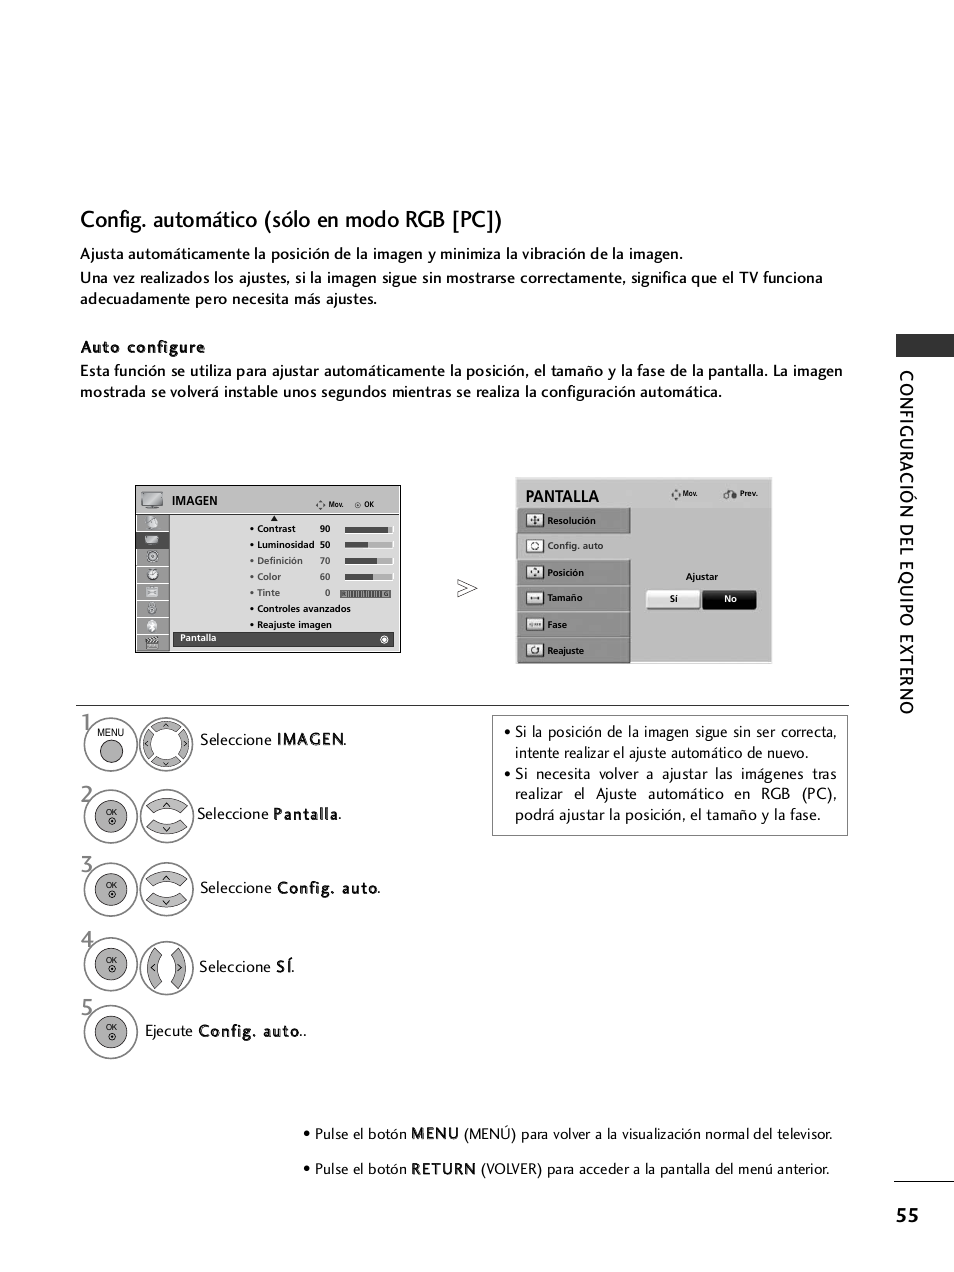 Config. automático (sólo en modo rgb [pc]), Configur a ción del eq uipo externo | LG 32LH40 Manual del usuario | Página 57 / 180